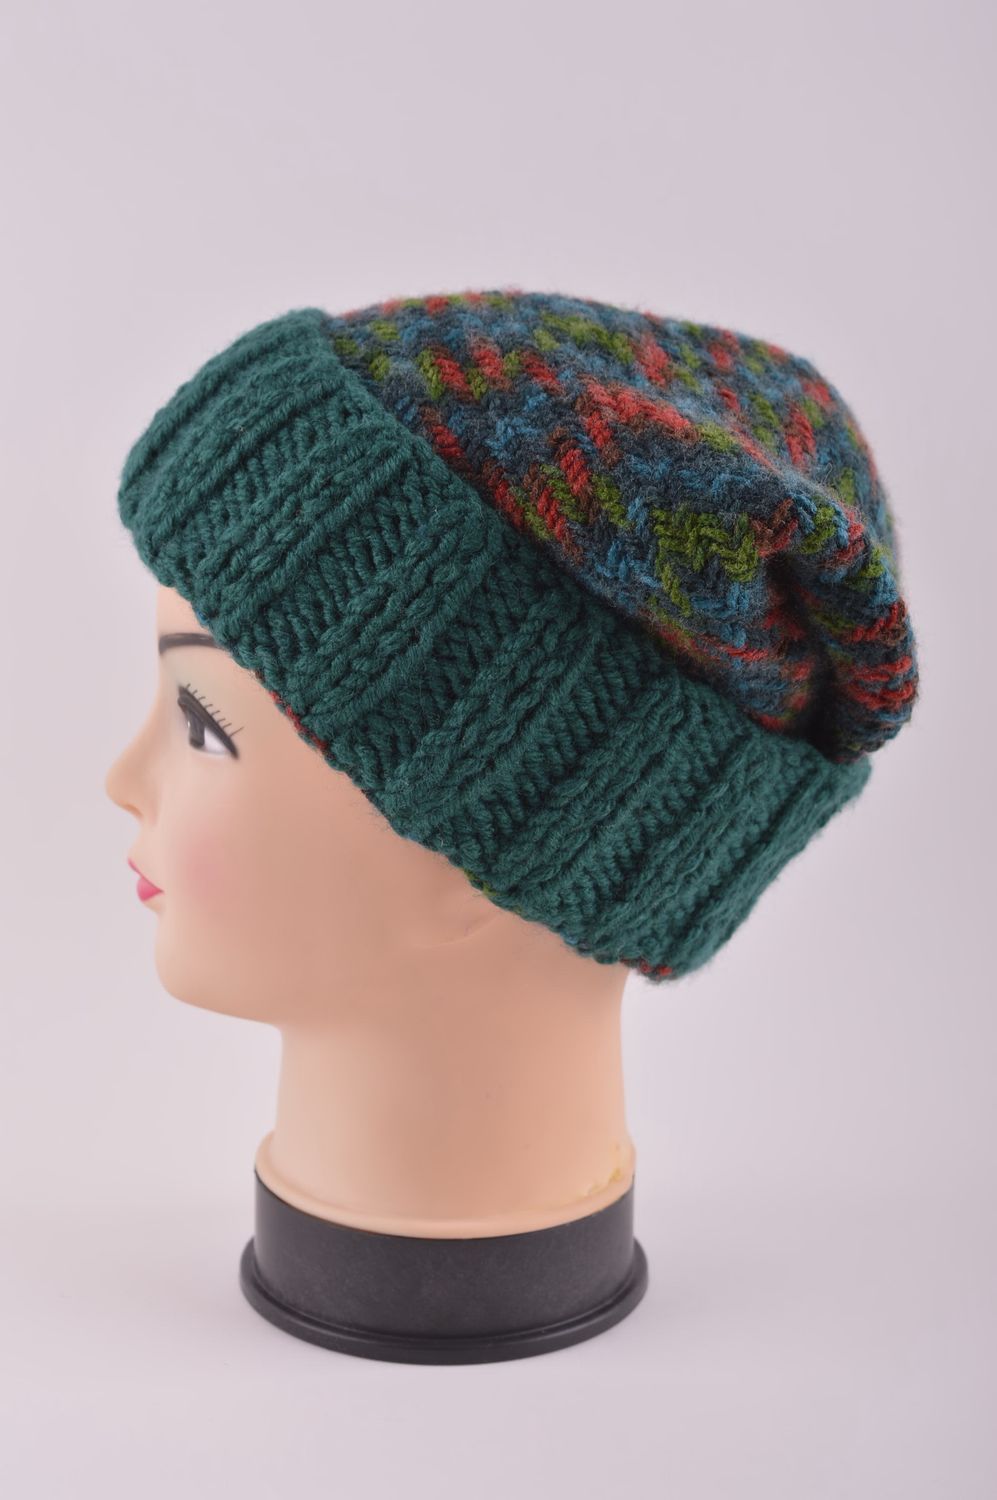 Knitted hat handmade knitted accessories warm winter hat women woolen hat photo 3